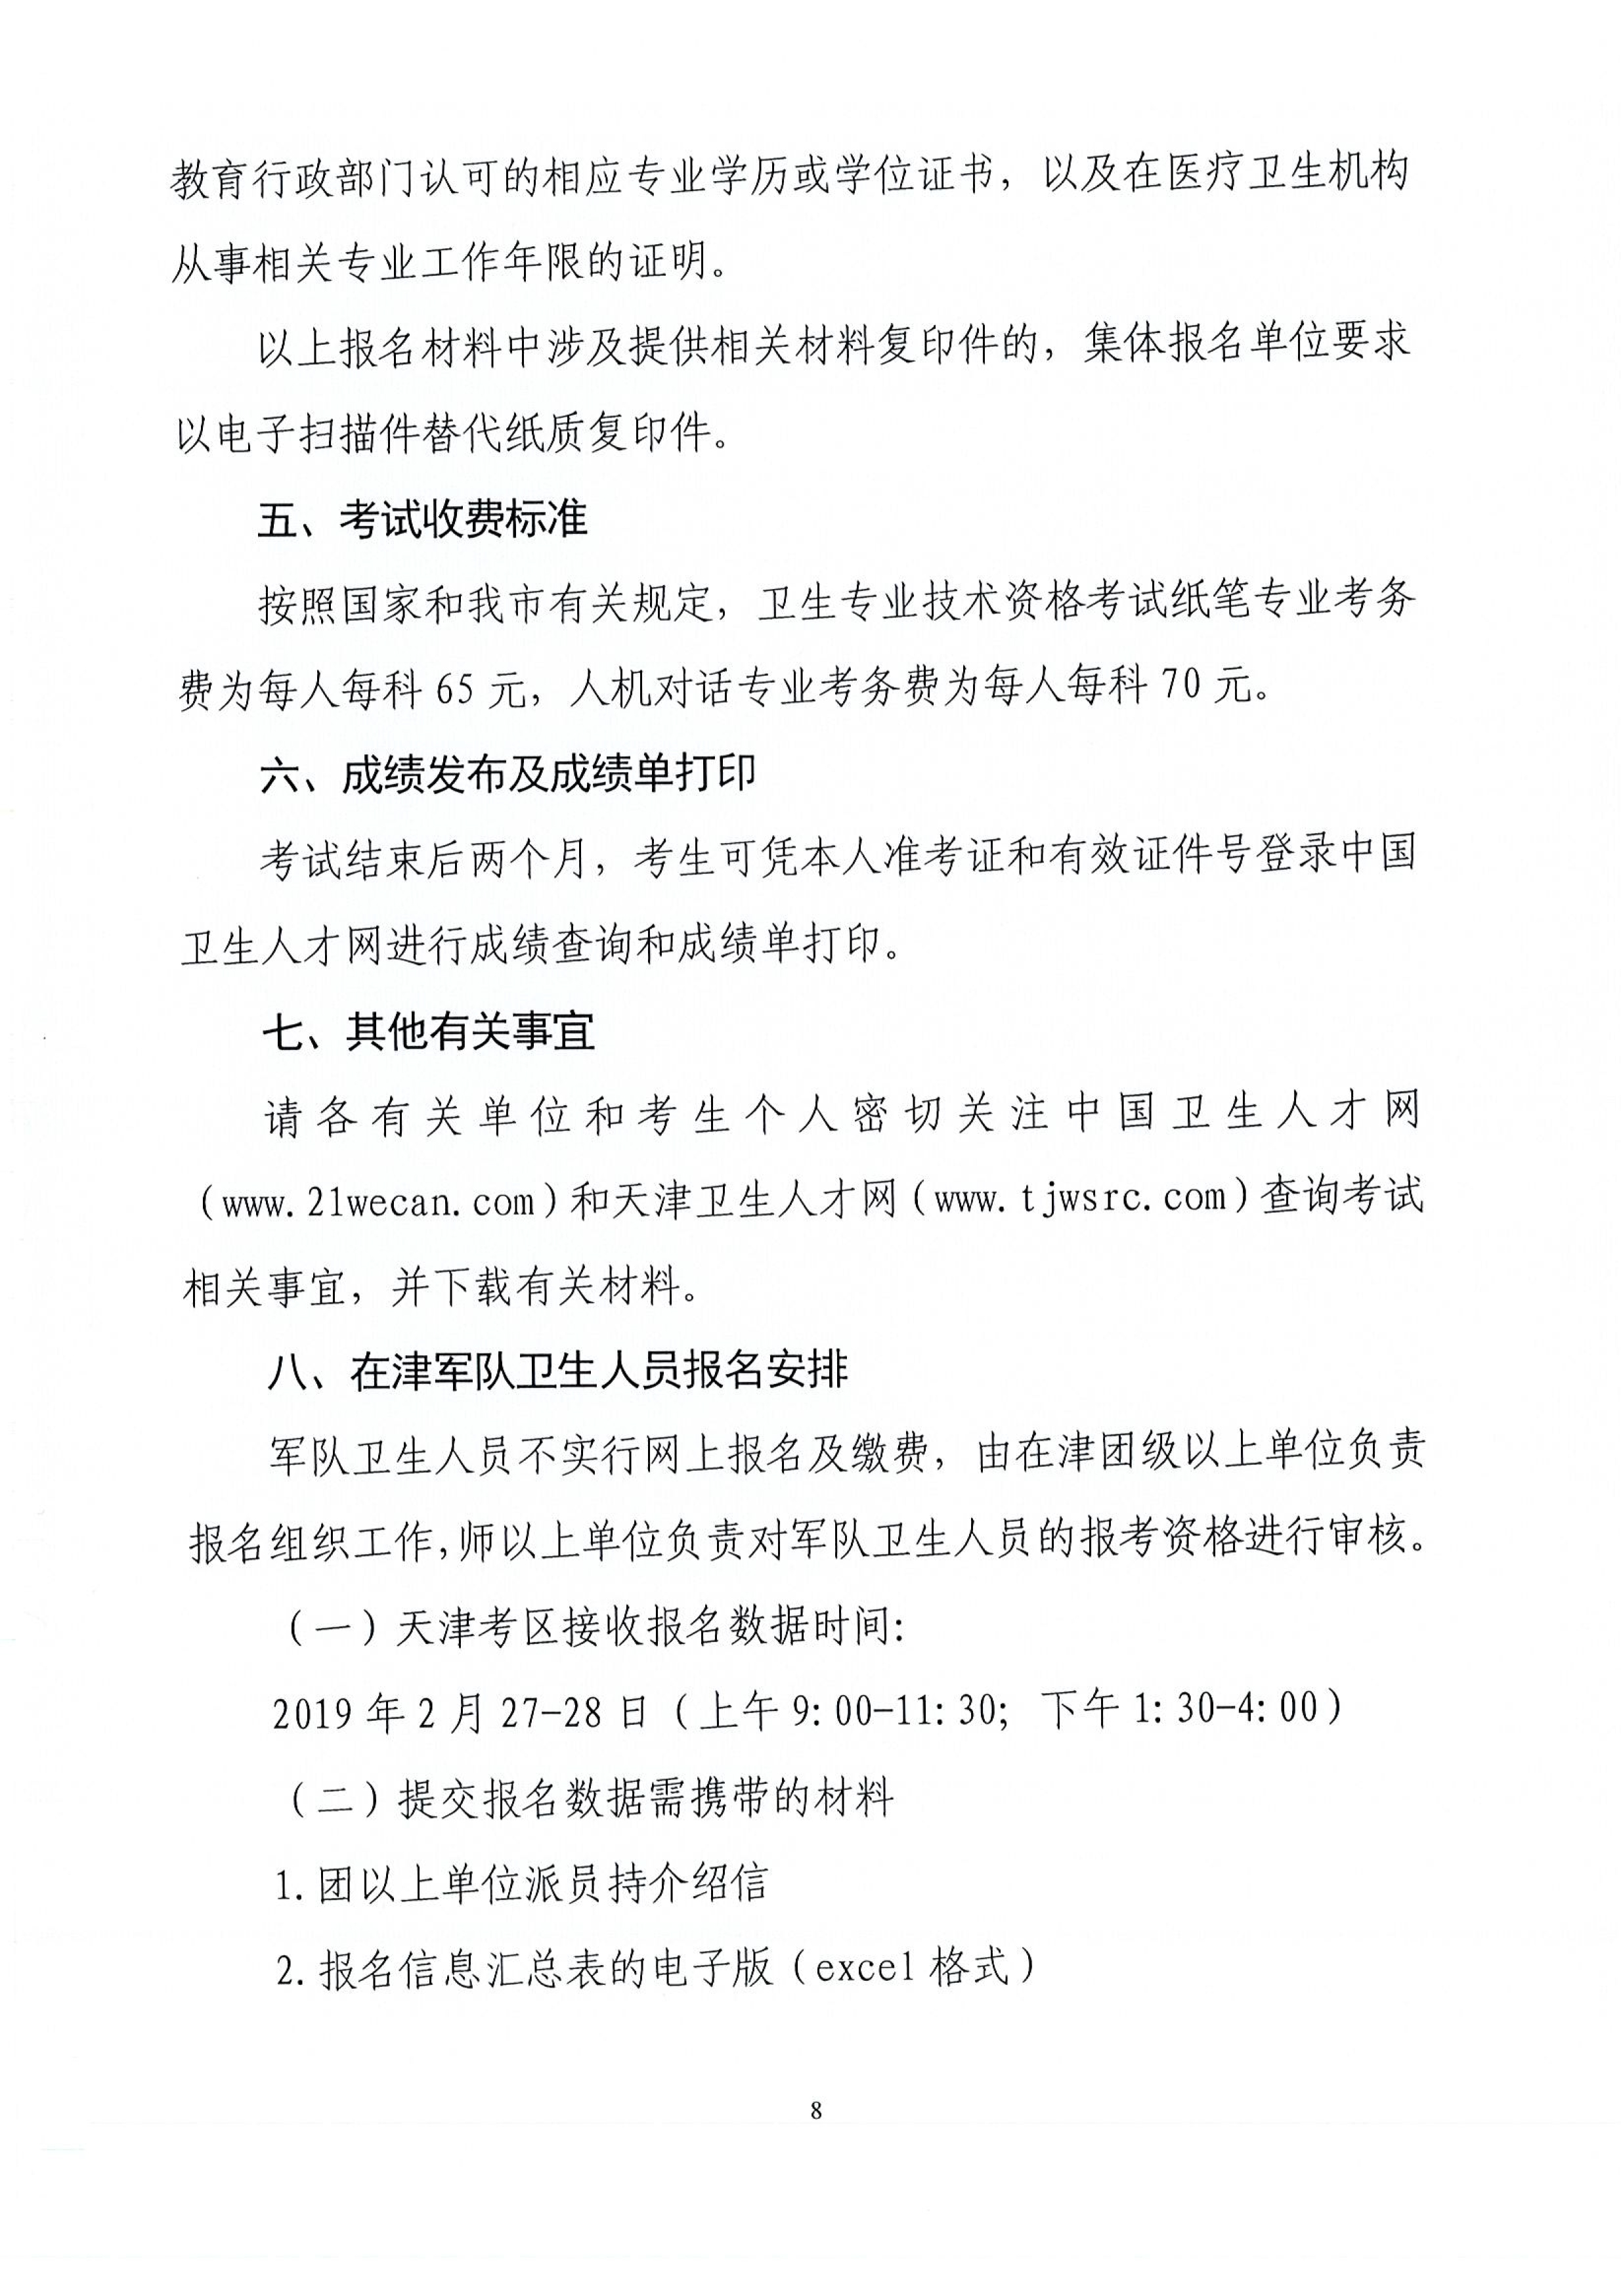 天津2019年卫生资格考试工作安排及有关问题的通知